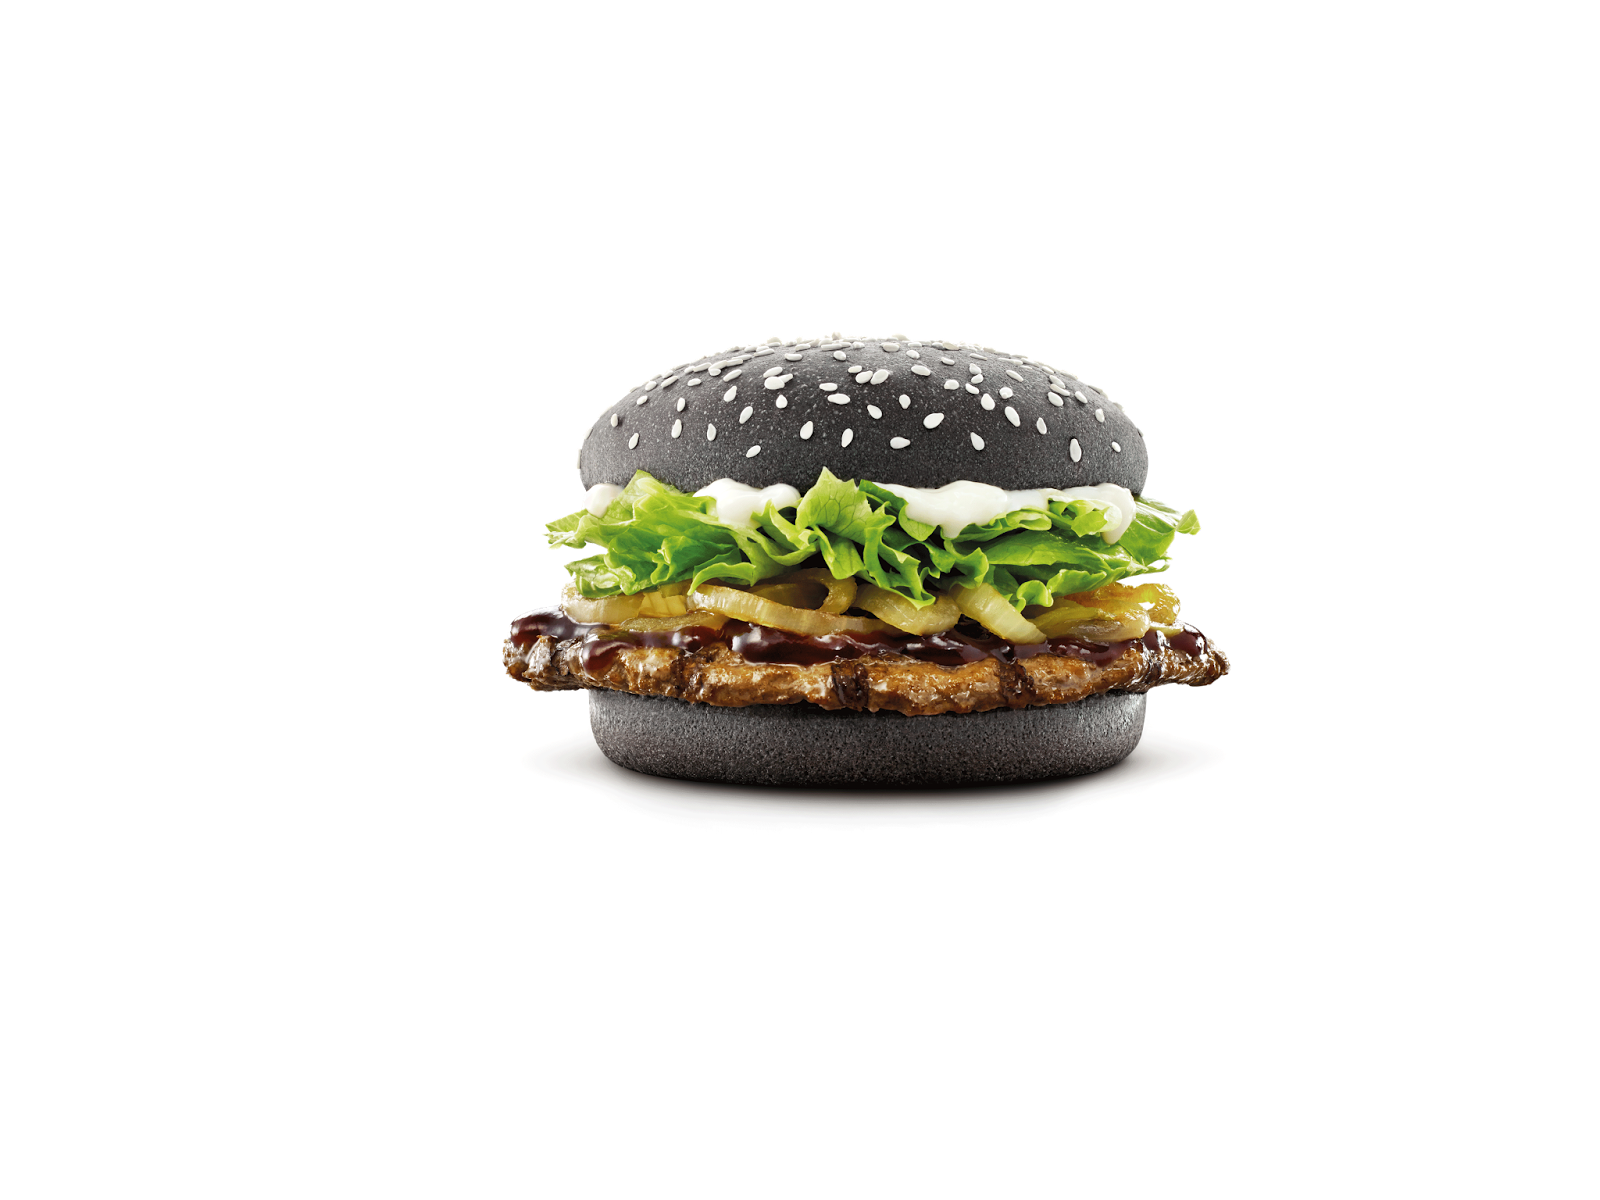 King Burger Hamburger Ninja Rasa Free HQ Image PNG Image